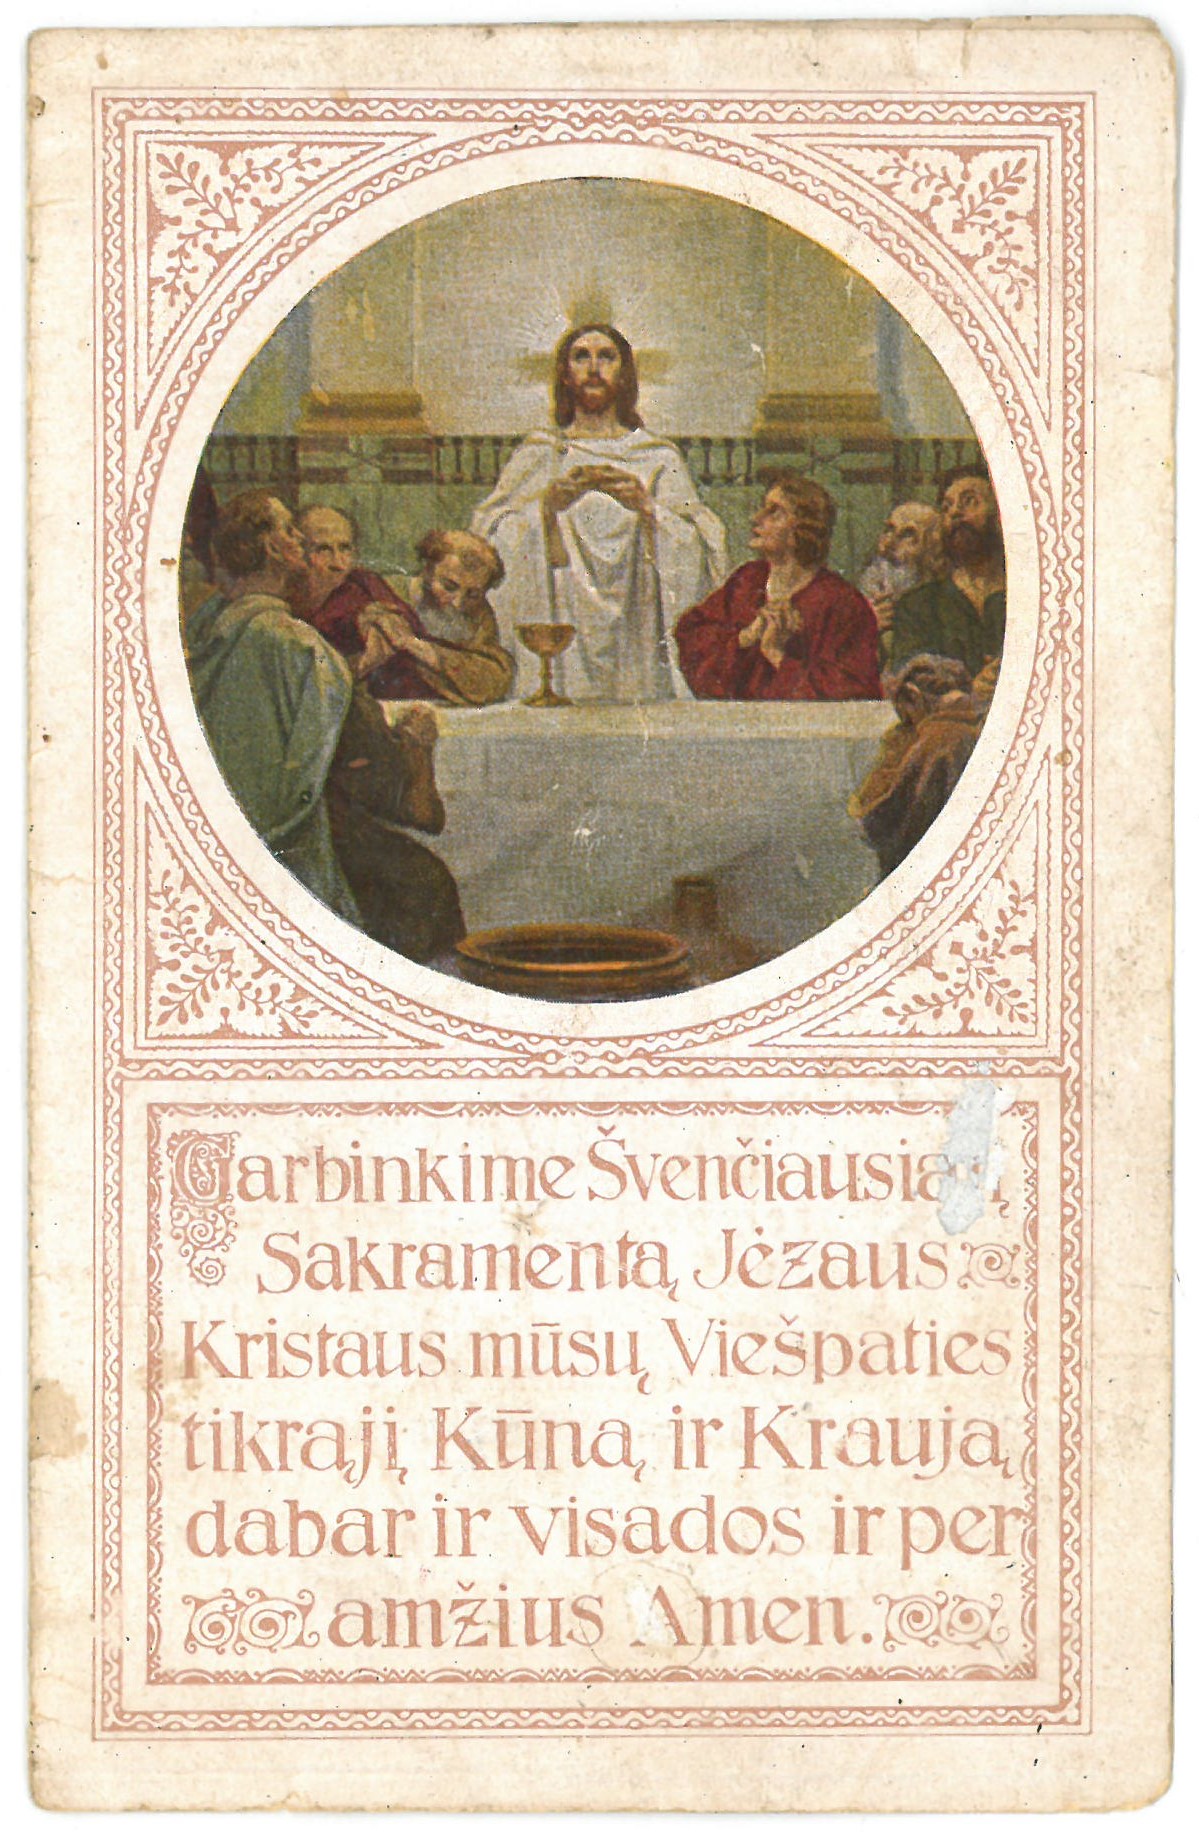 Religinis paveikslėlis-kortelė.  Priekinėje pusėje – augaliniais motyvais įrėmintas Jėzaus ir apaštalų atvaizdas, maldos tekstas